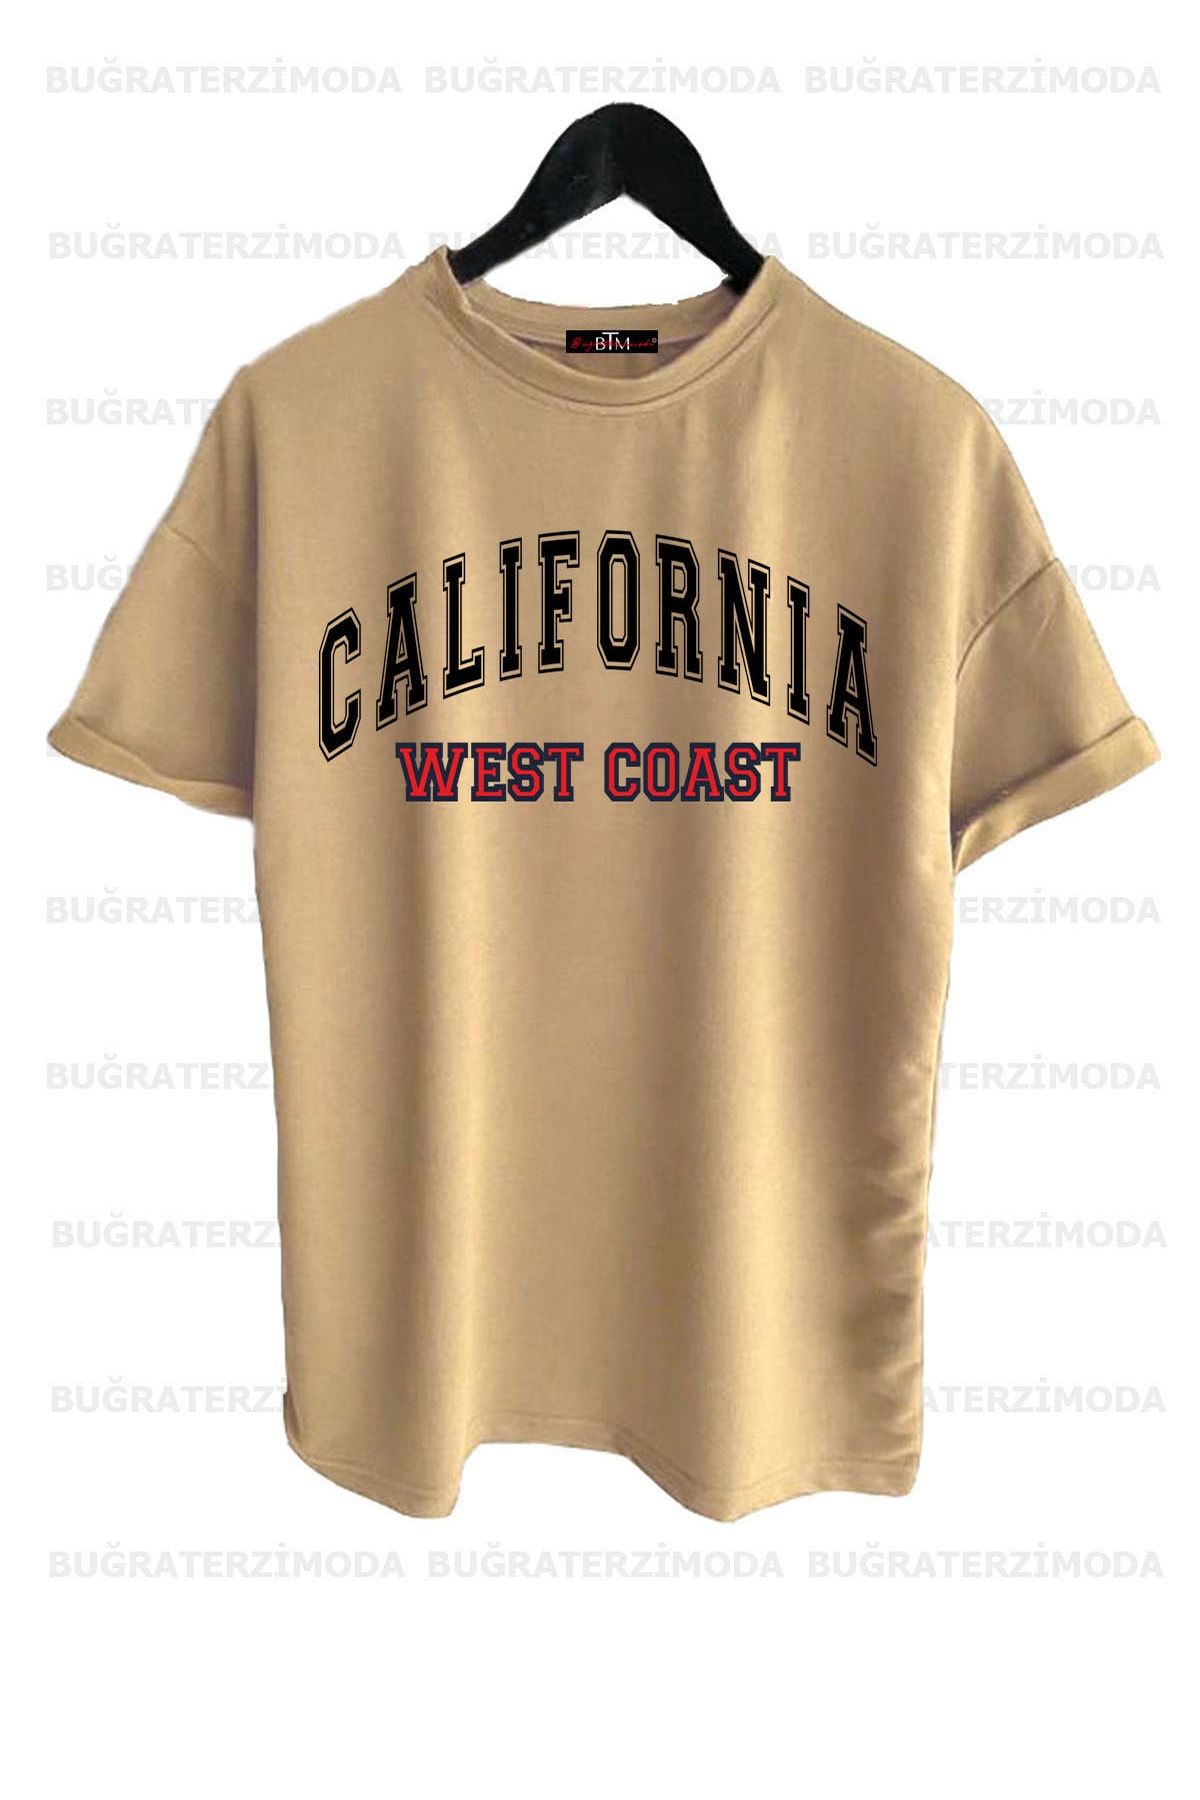 Buğraterzimoda California Baskılı Unisex Bej Rengi Oversize T-shirt